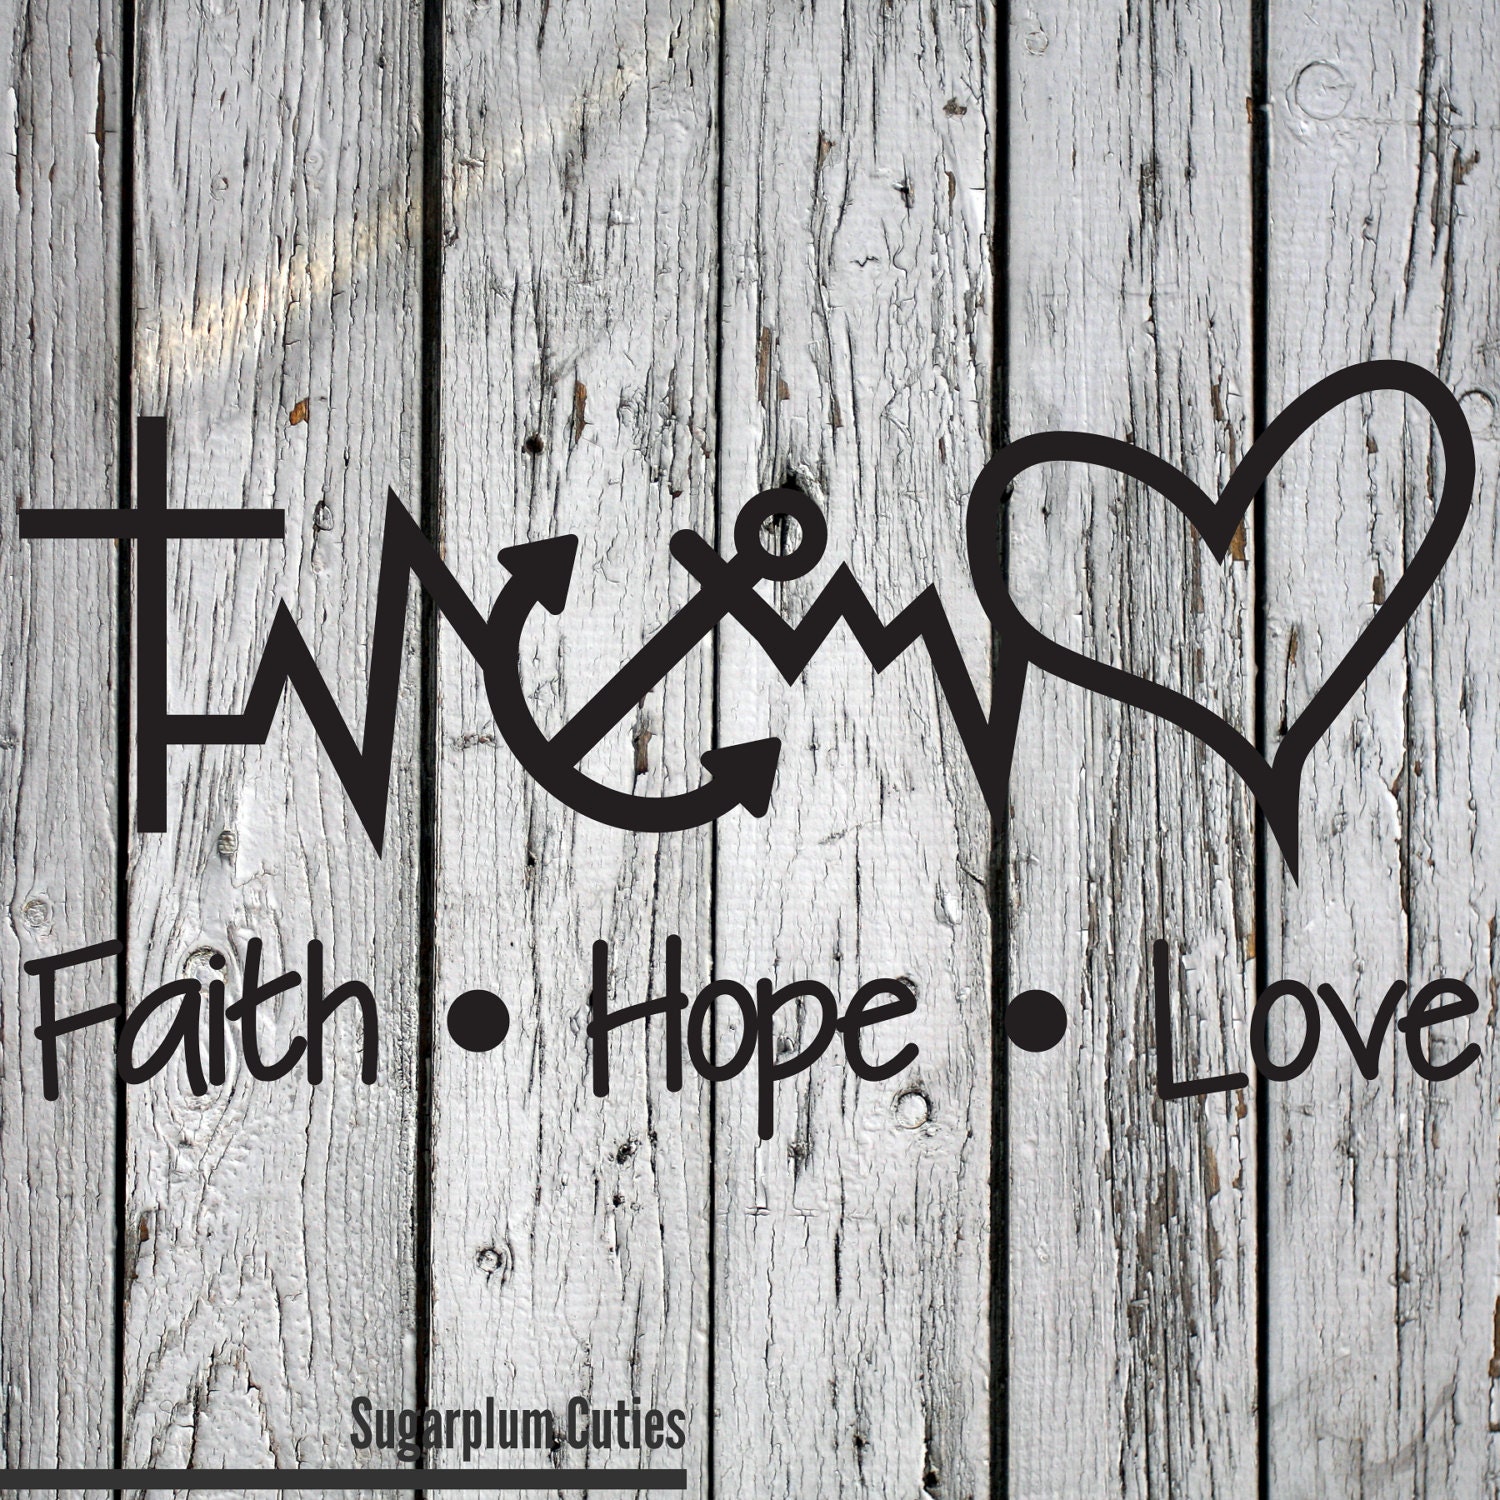 Faith hope перевод